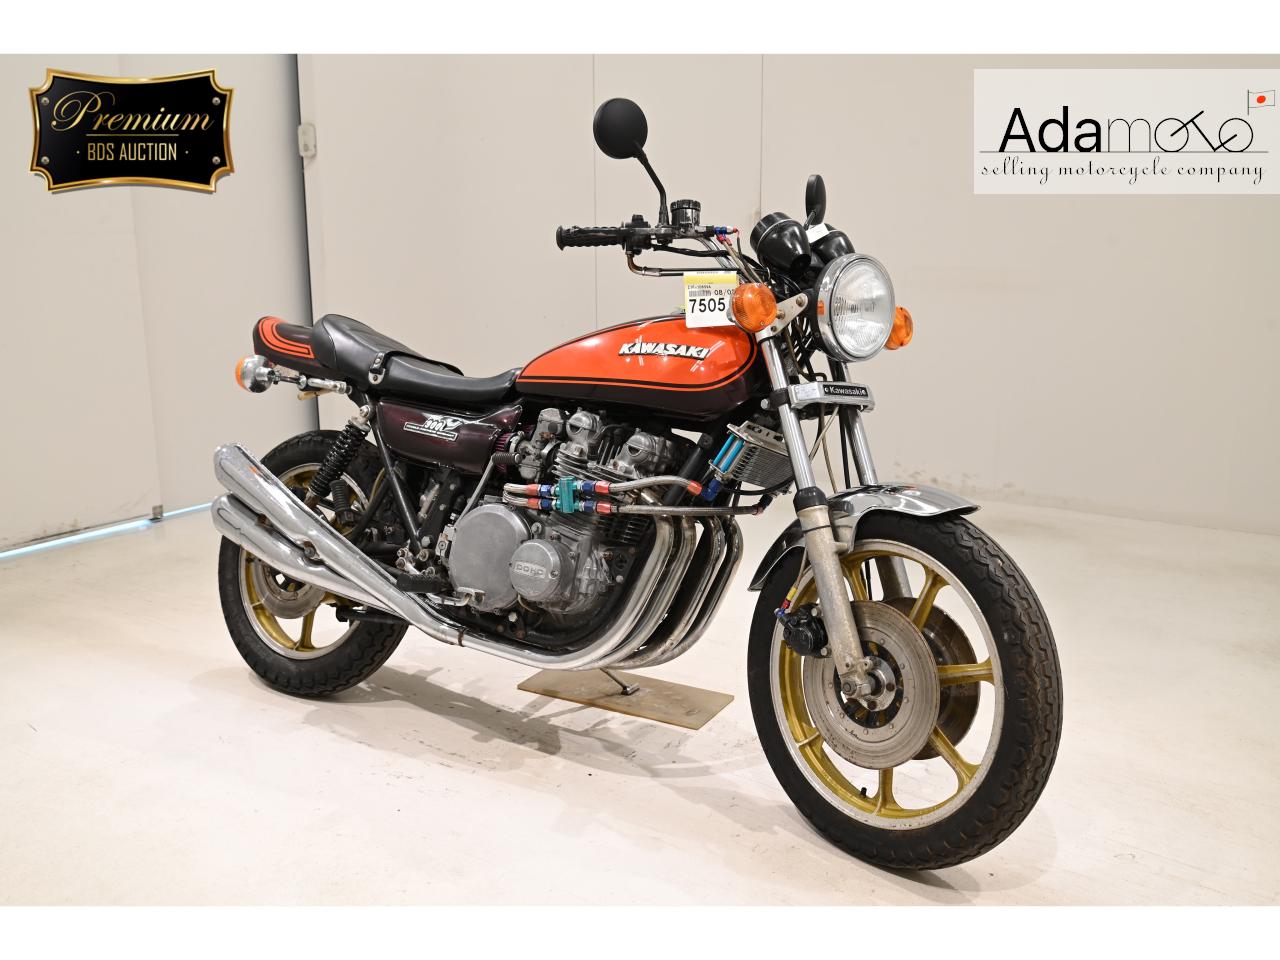 Kawasaki Z900 - Adamoto - Motorcycles from Japan